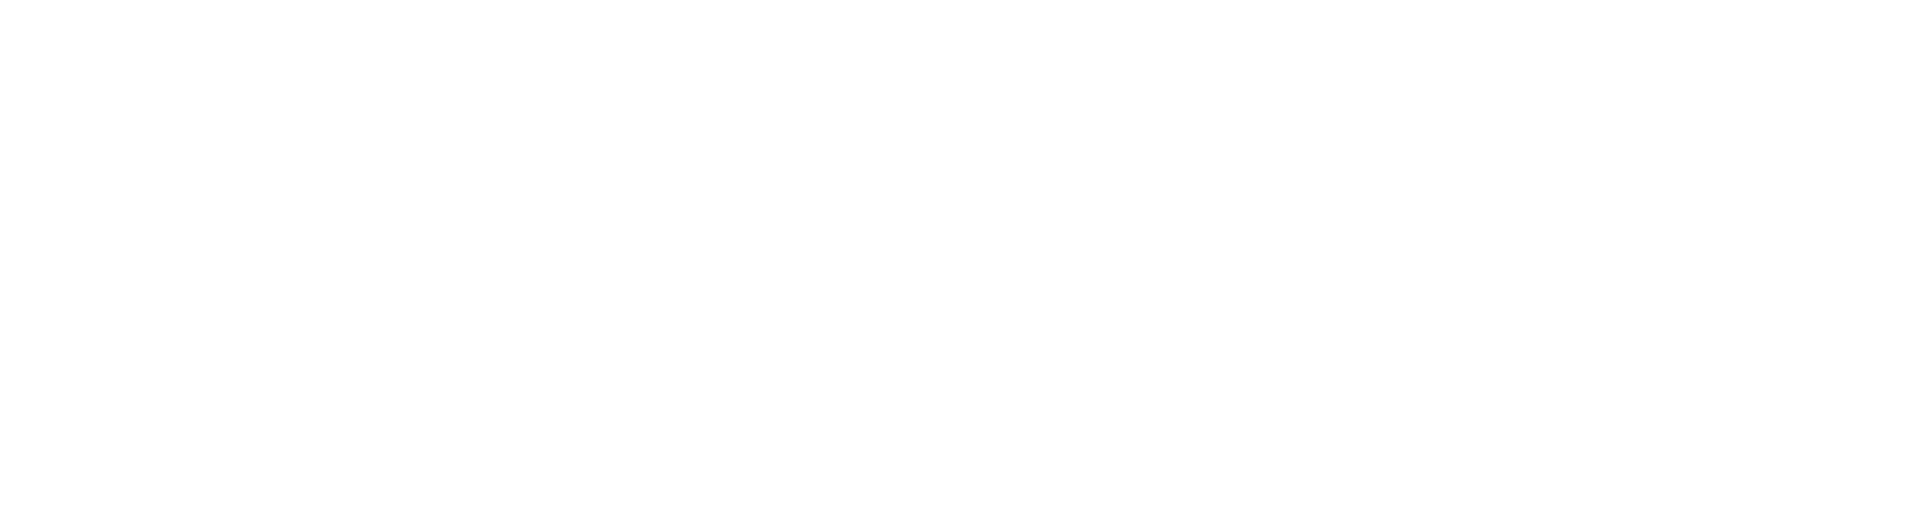 interface fluidics white logo